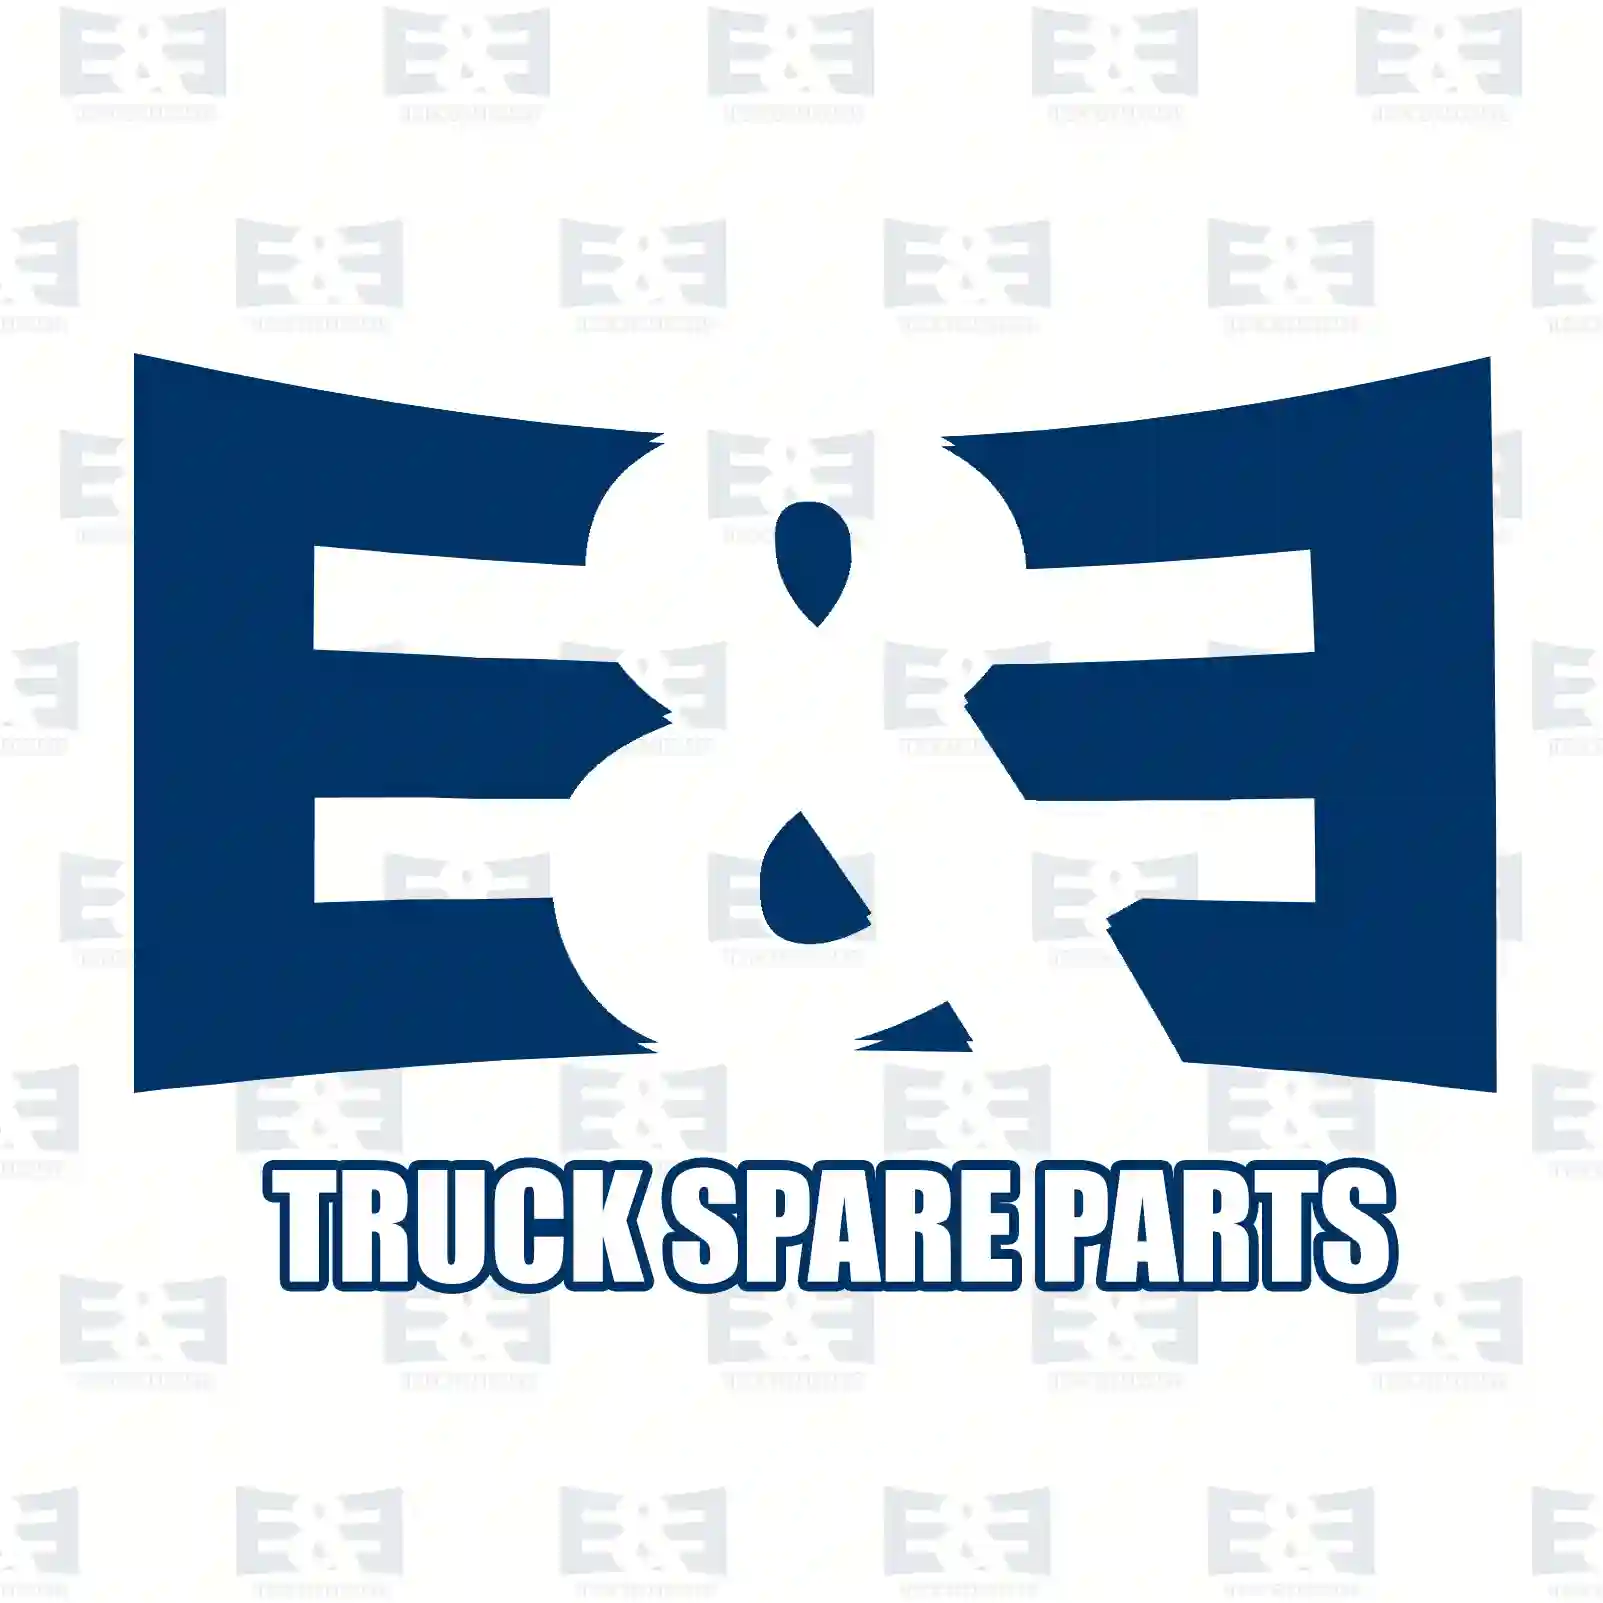 Center bearing, 2E2276997, 42535254, 42535254, 42554407, 42561251, ZG02510-0008 ||  2E2276997 E&E Truck Spare Parts | Truck Spare Parts, Auotomotive Spare Parts Center bearing, 2E2276997, 42535254, 42535254, 42554407, 42561251, ZG02510-0008 ||  2E2276997 E&E Truck Spare Parts | Truck Spare Parts, Auotomotive Spare Parts